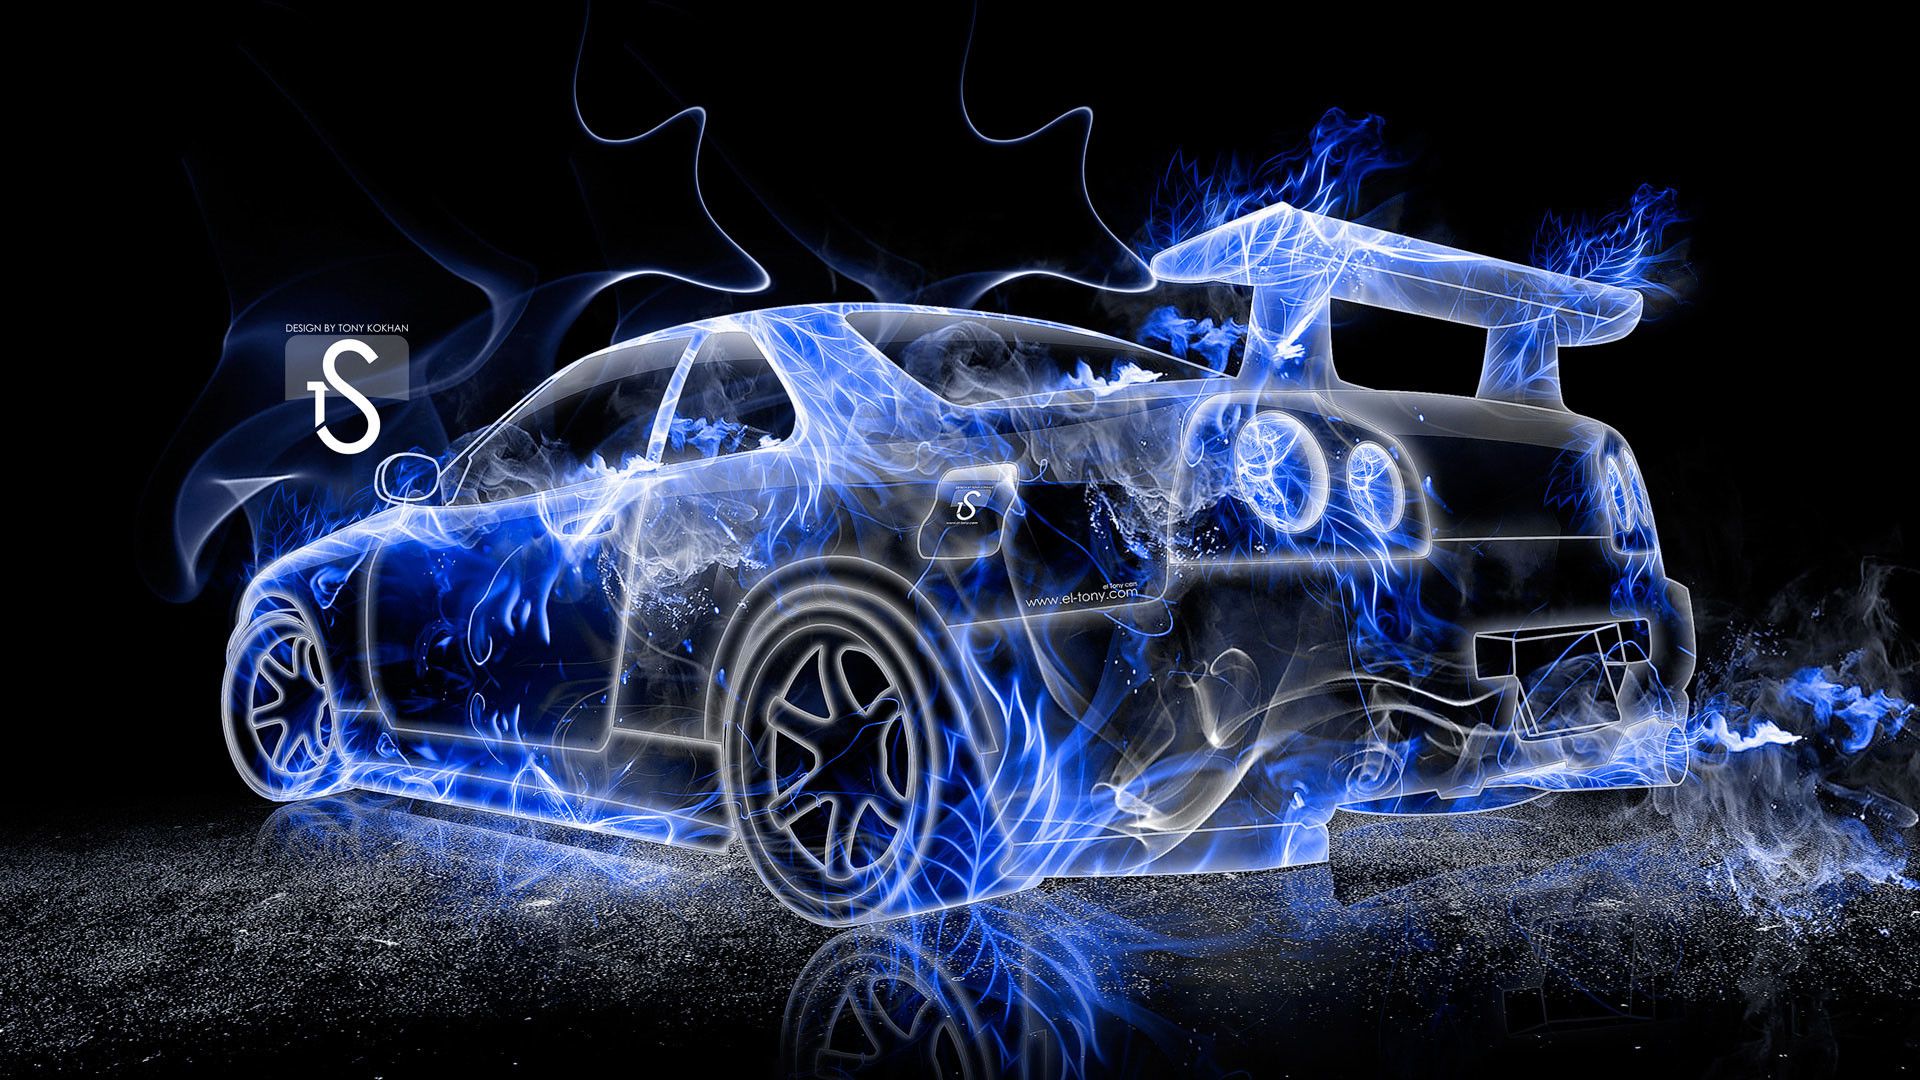 Flaming Cars Wallpaper HD For Desktop Cars Wallpaper